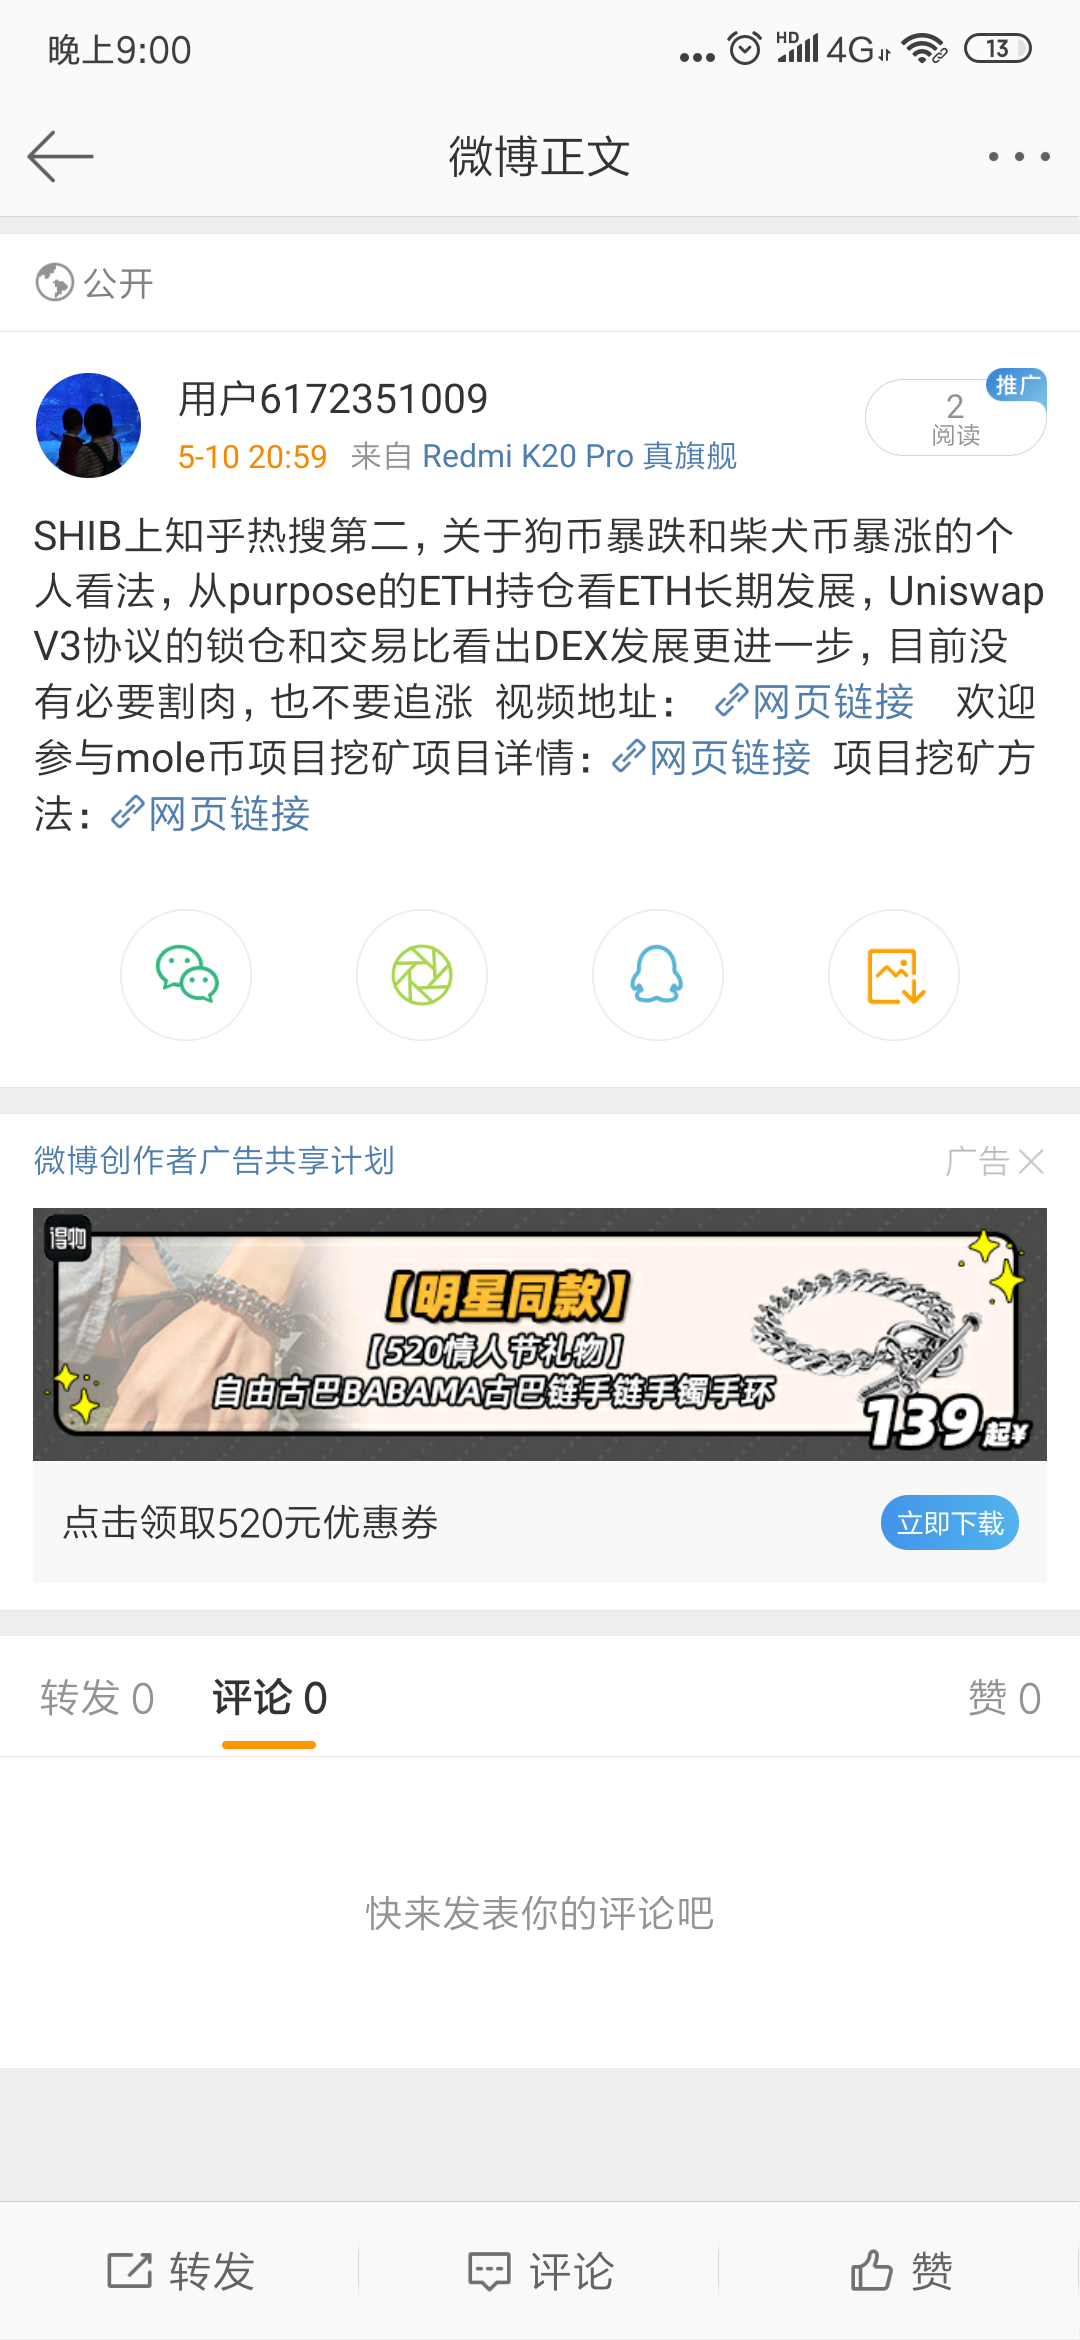 Screenshot_2021-05-10-21-00-02-532_com.sina.weibo.png